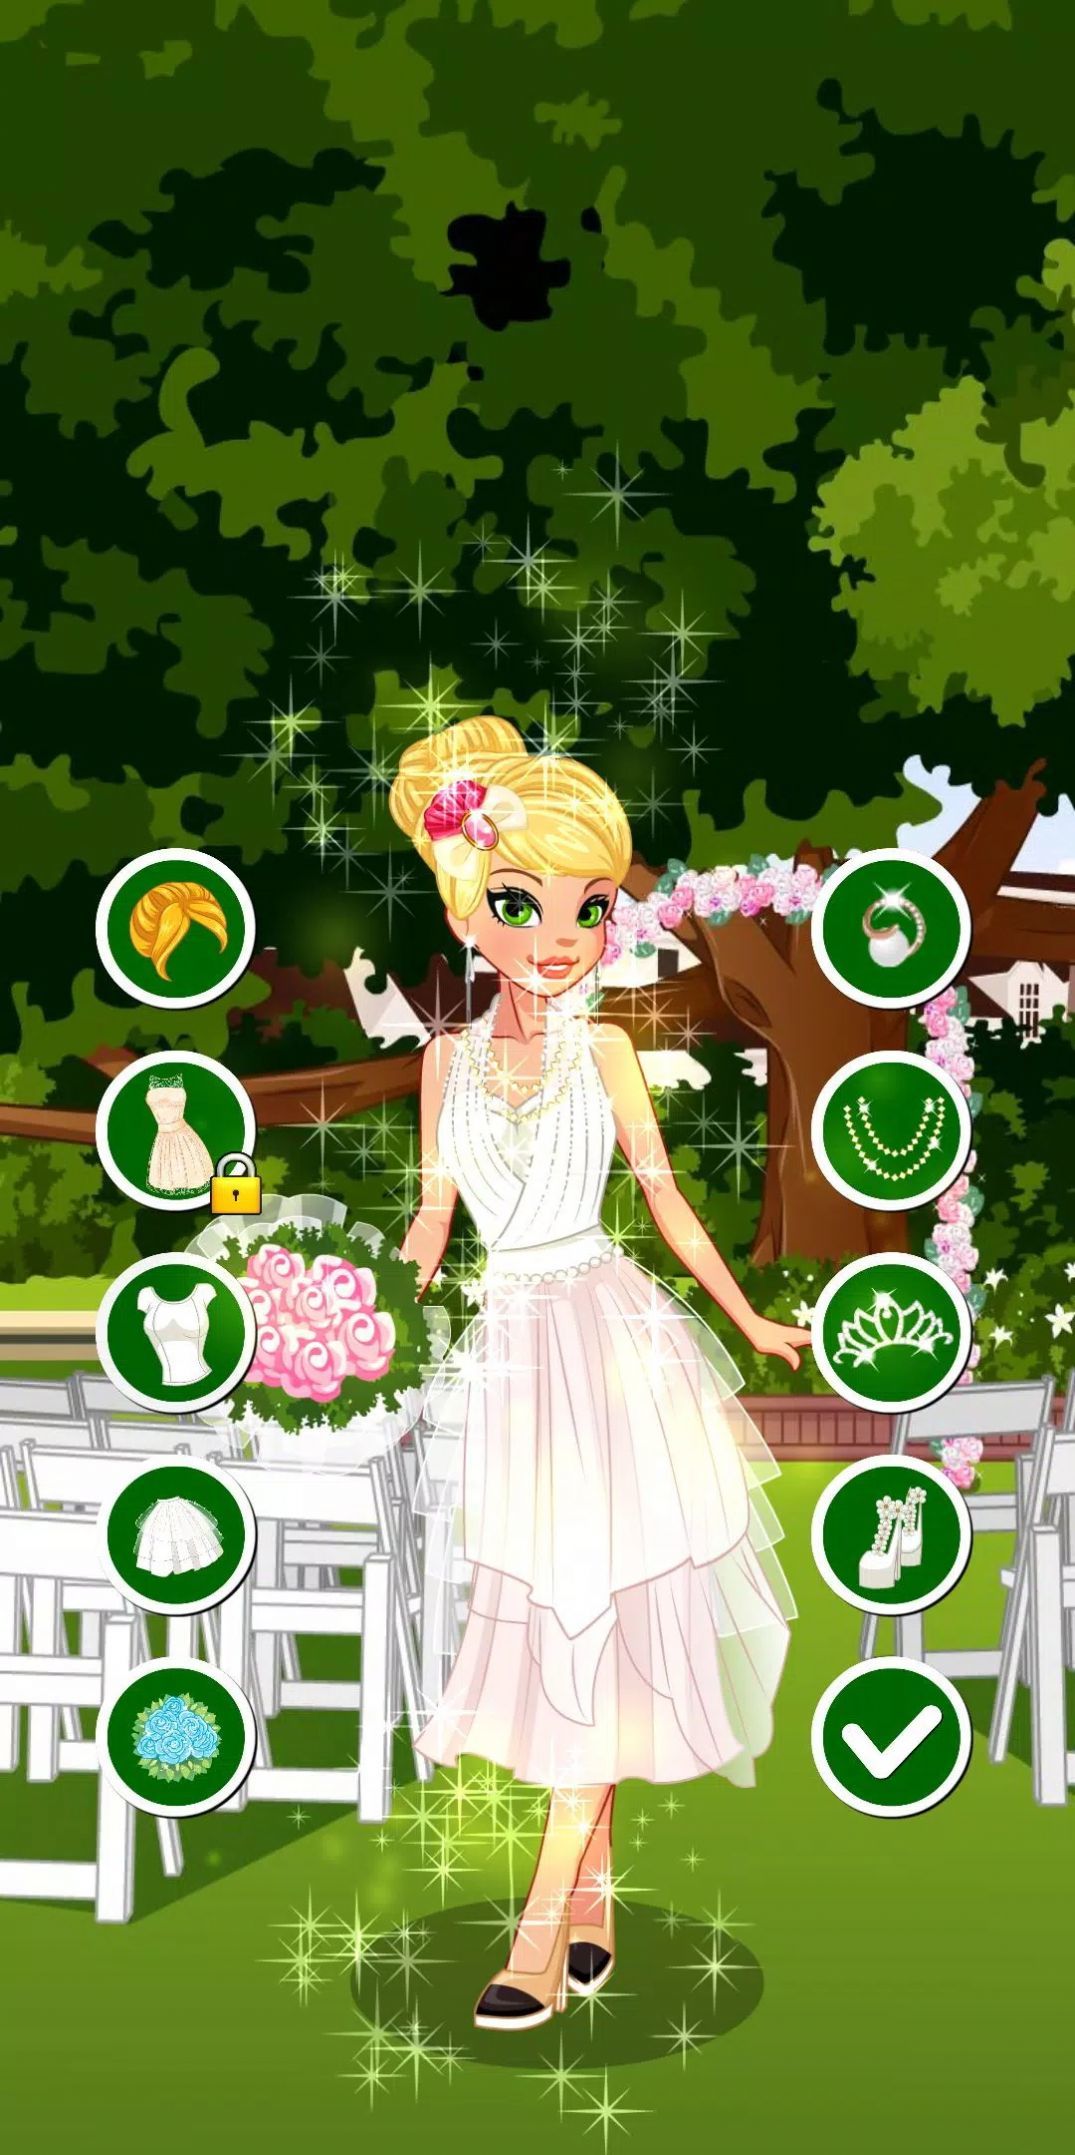 梦幻新娘换装(Dream Bride Dress Up)游戏截图